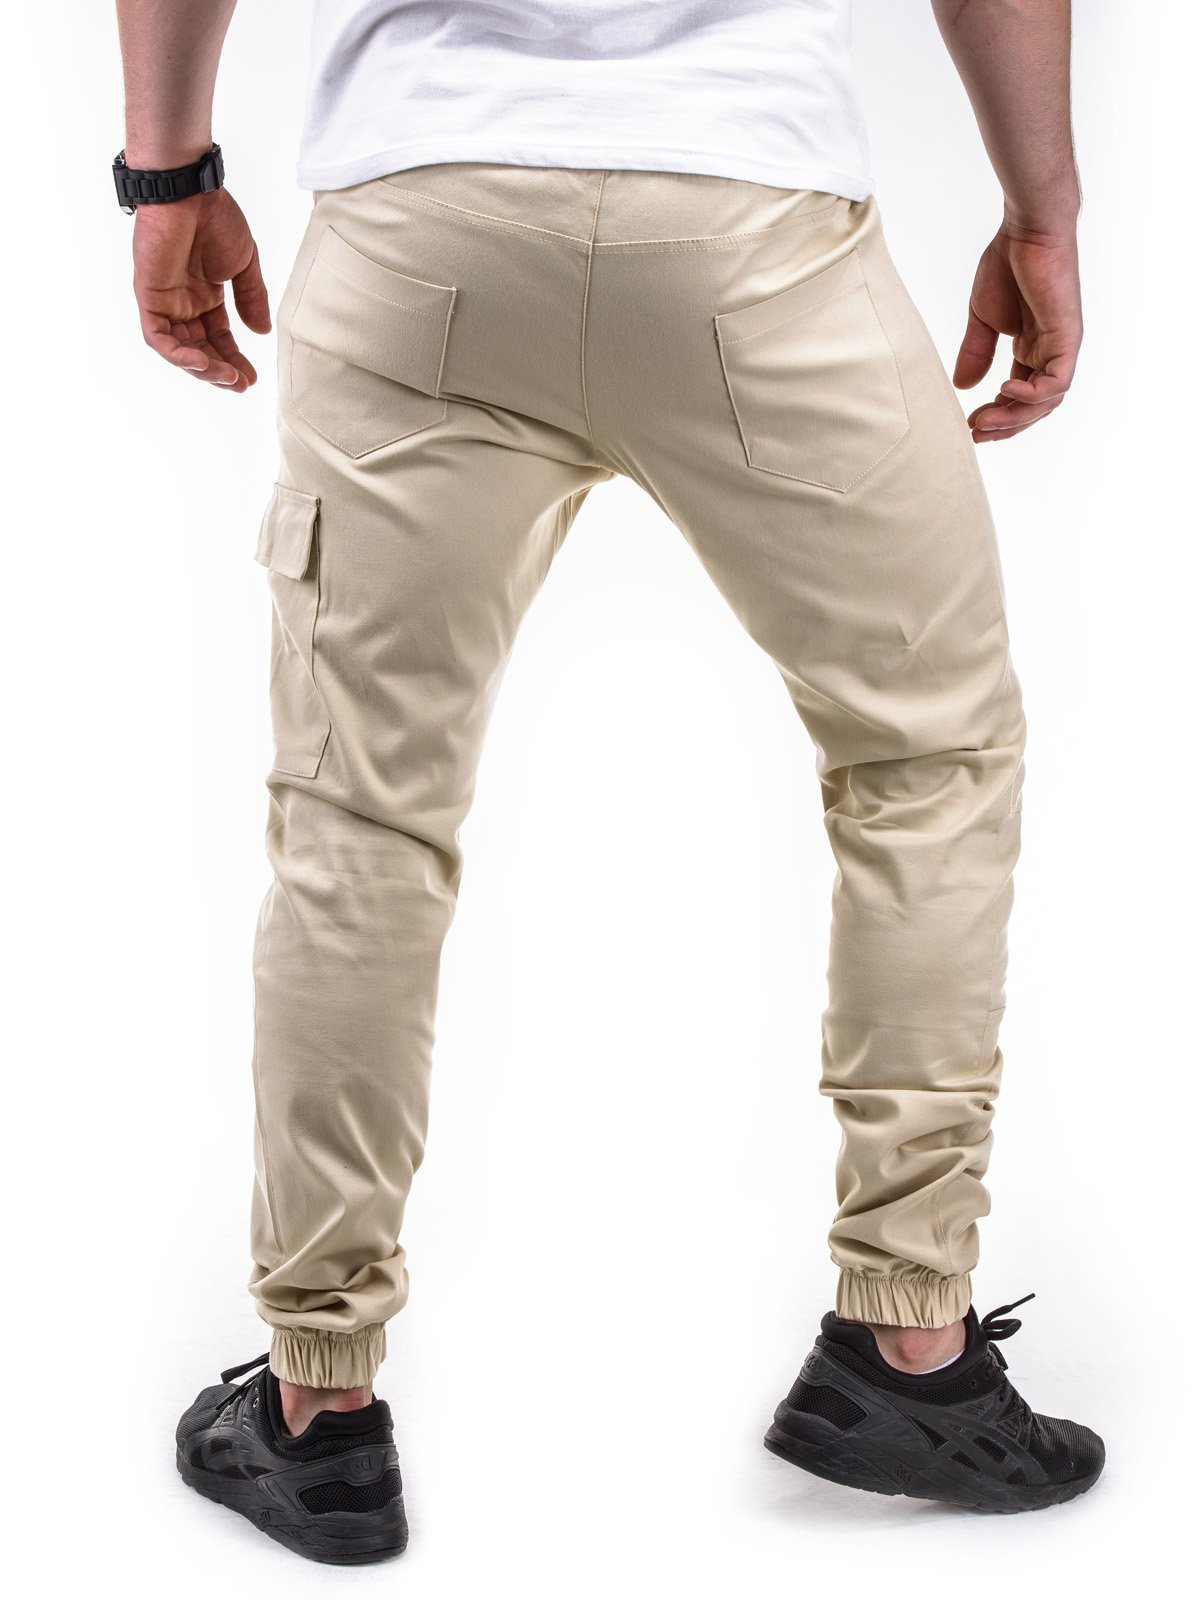 MEN'S JOGGER PANTS P391 - BEIGE | MODONE wholesale - Clothing For Men